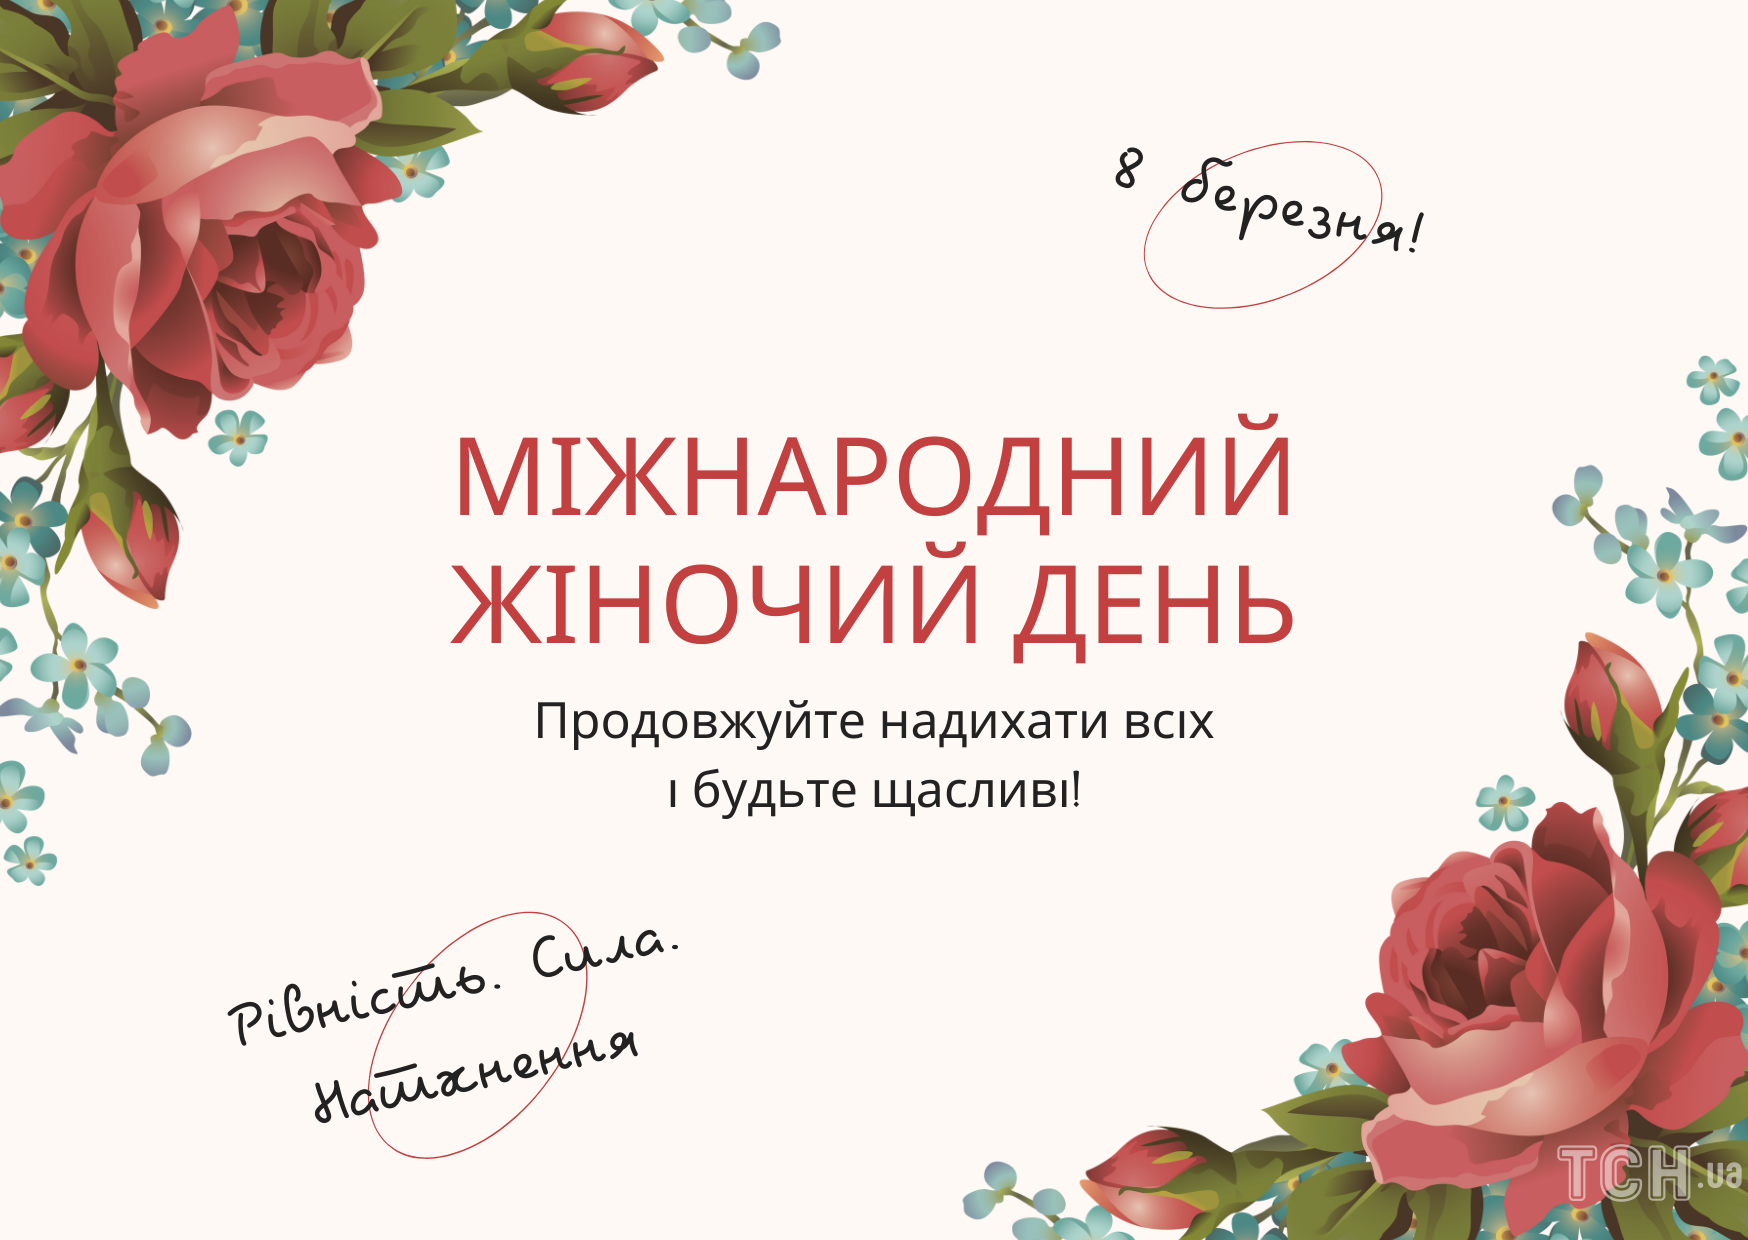 З 8 Березня 2023 року: картинки українською, привітання в прозі та віршах до Міжнародного жіночого дня